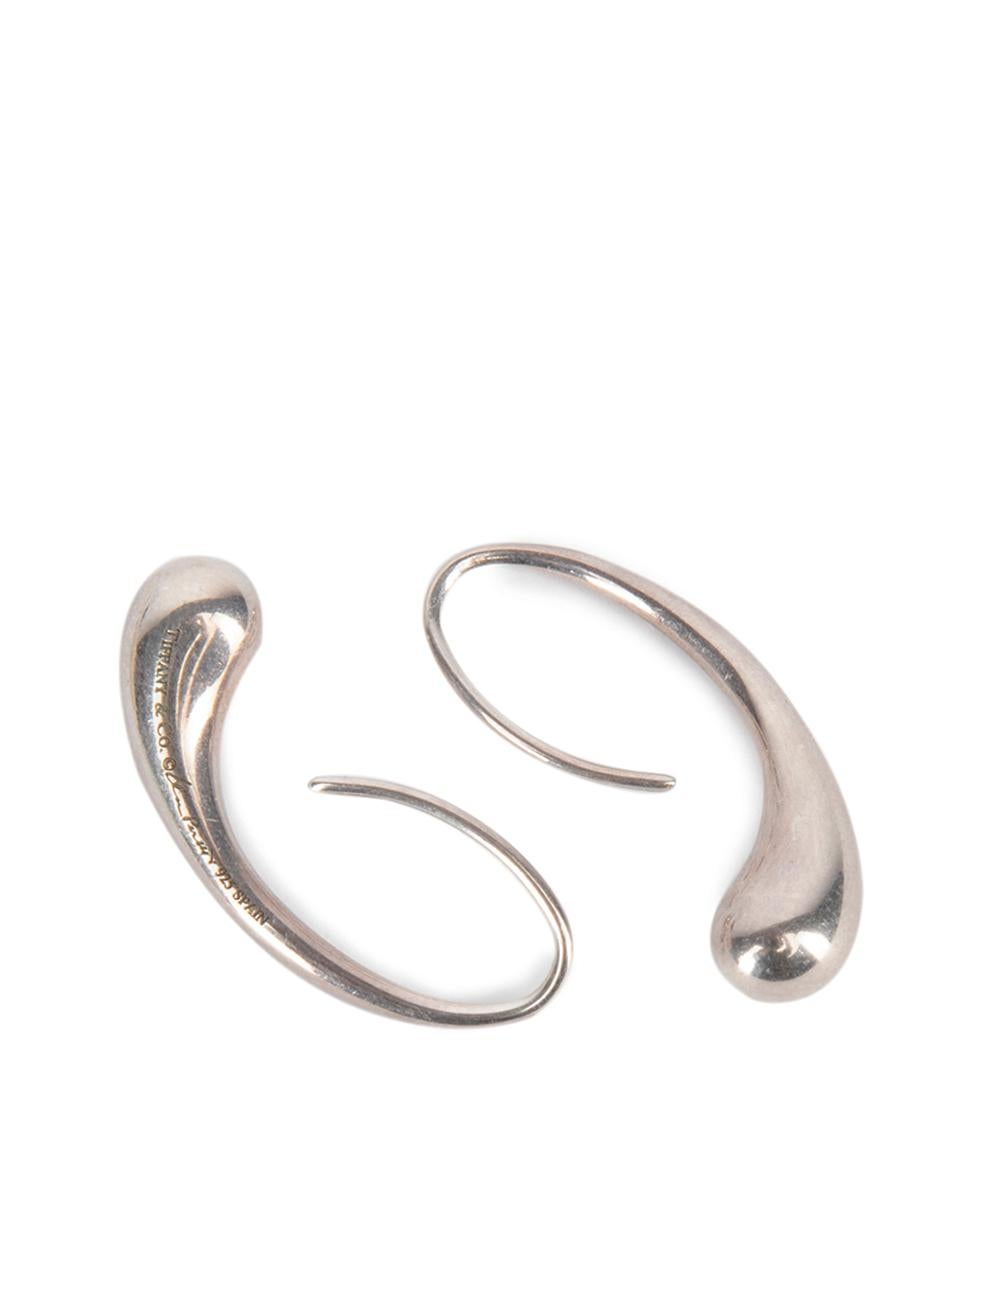 Pre-Loved Tiffany & Co Women's Sterling Sliver Teardrop Earrings 1